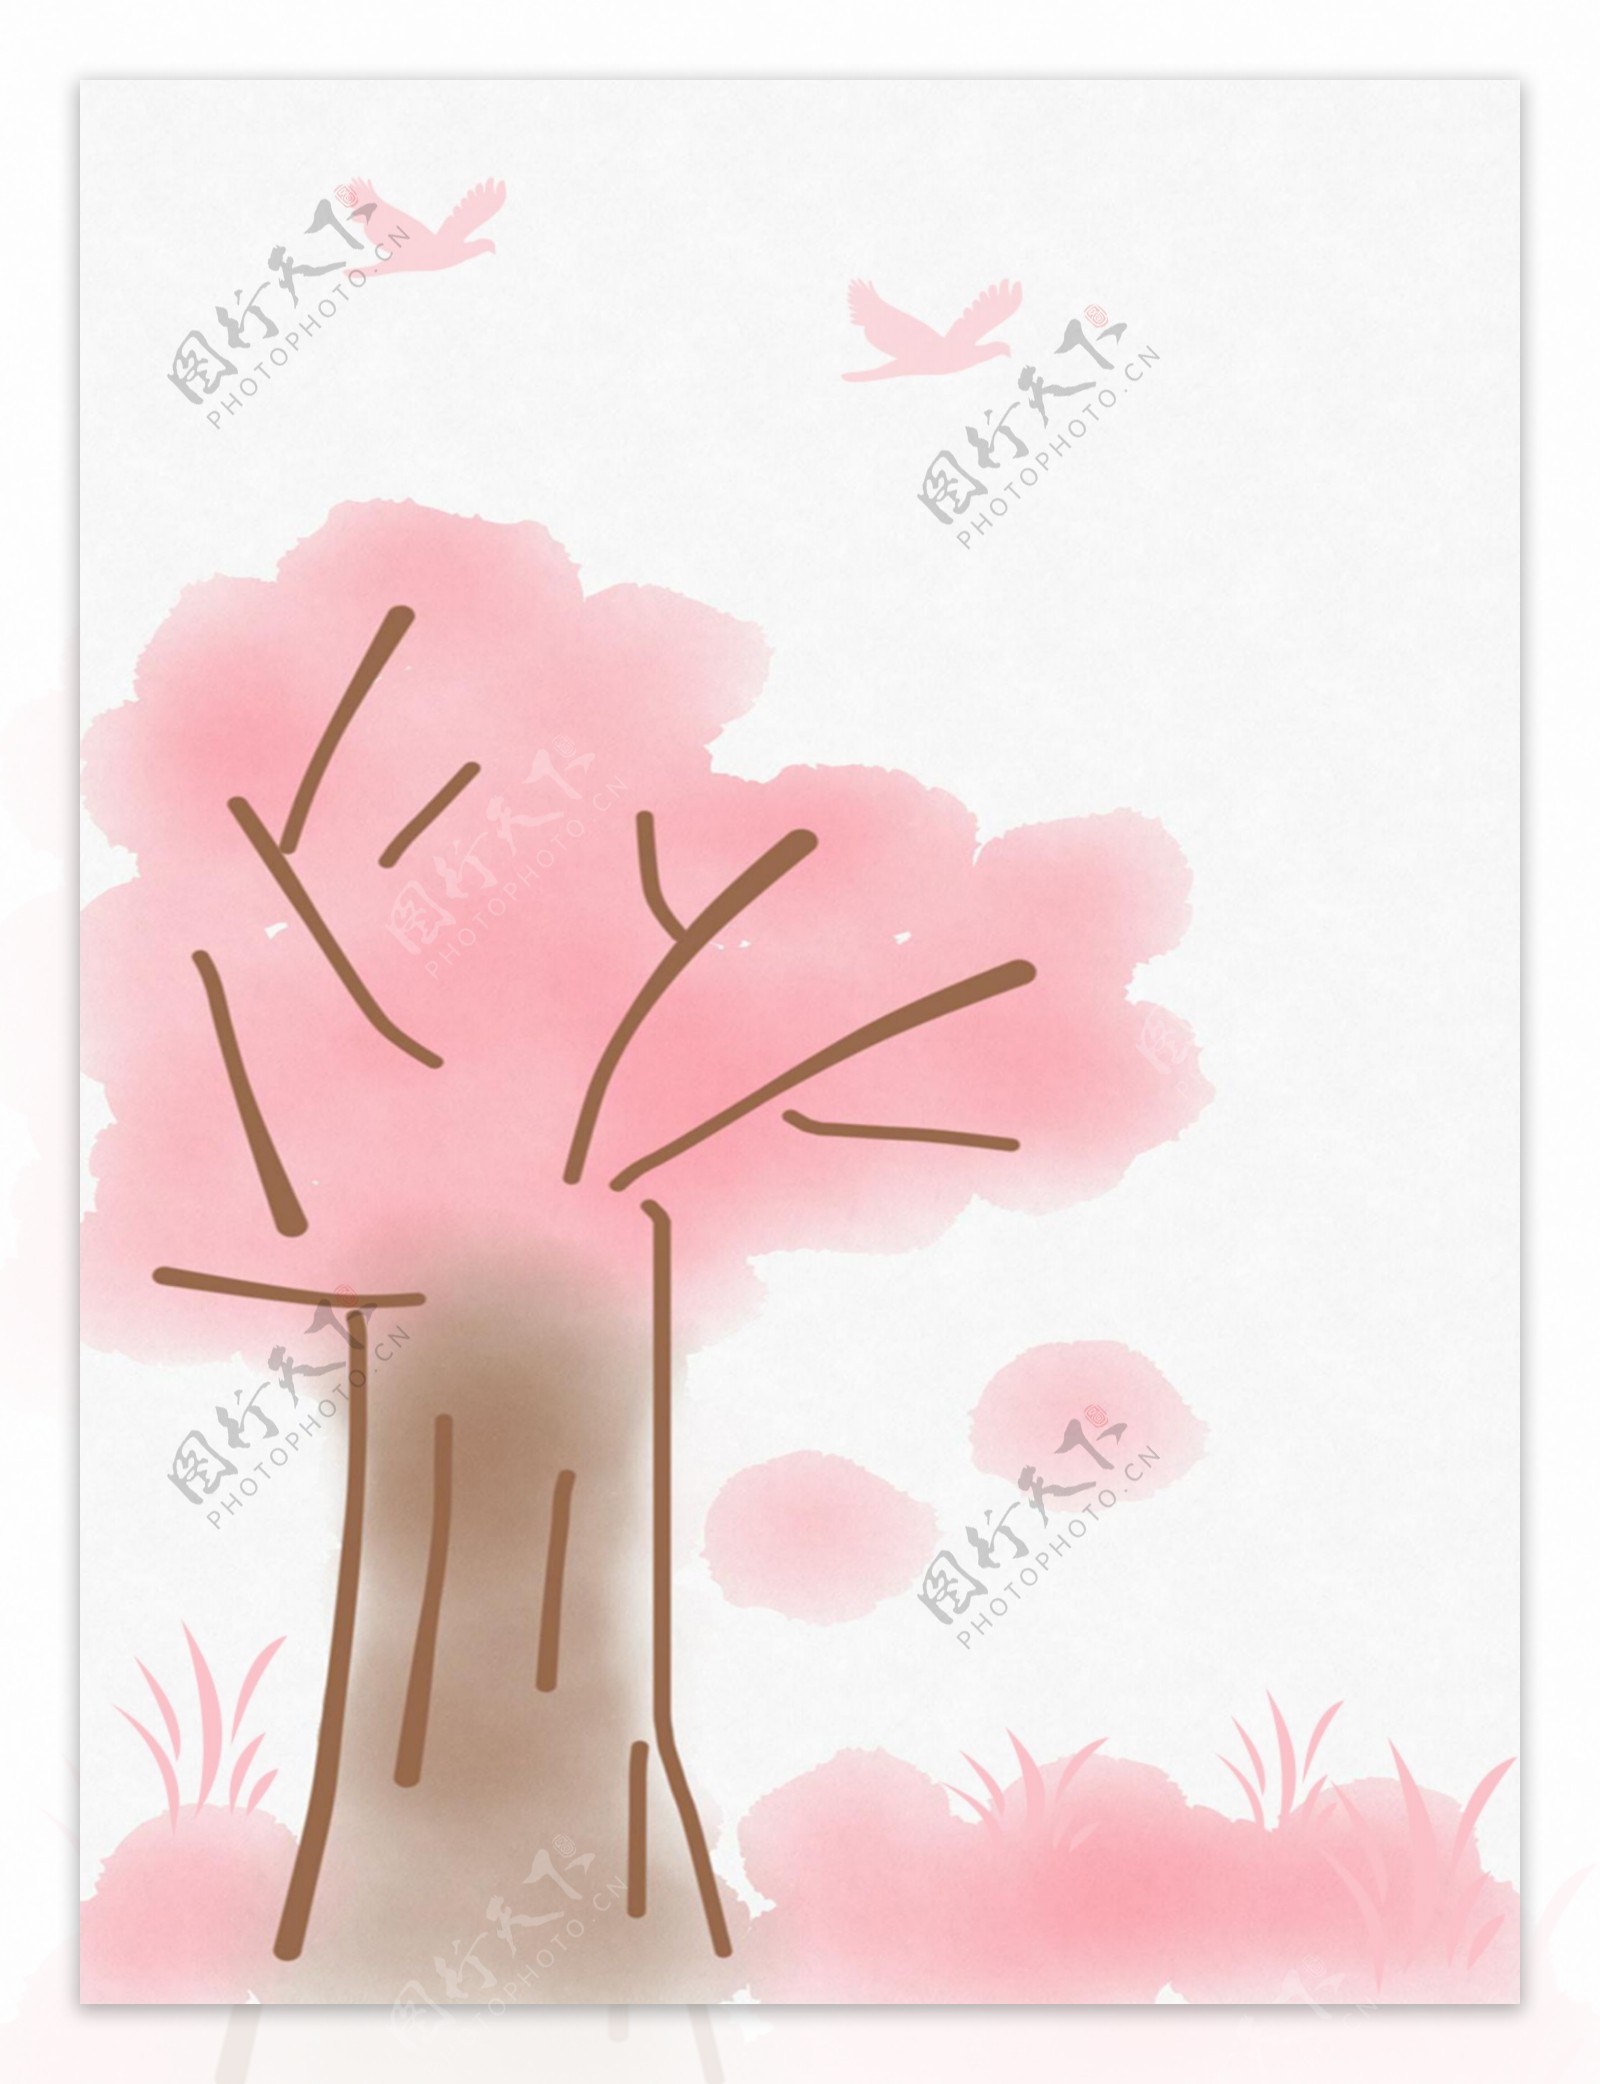 粉色手绘大树背景图